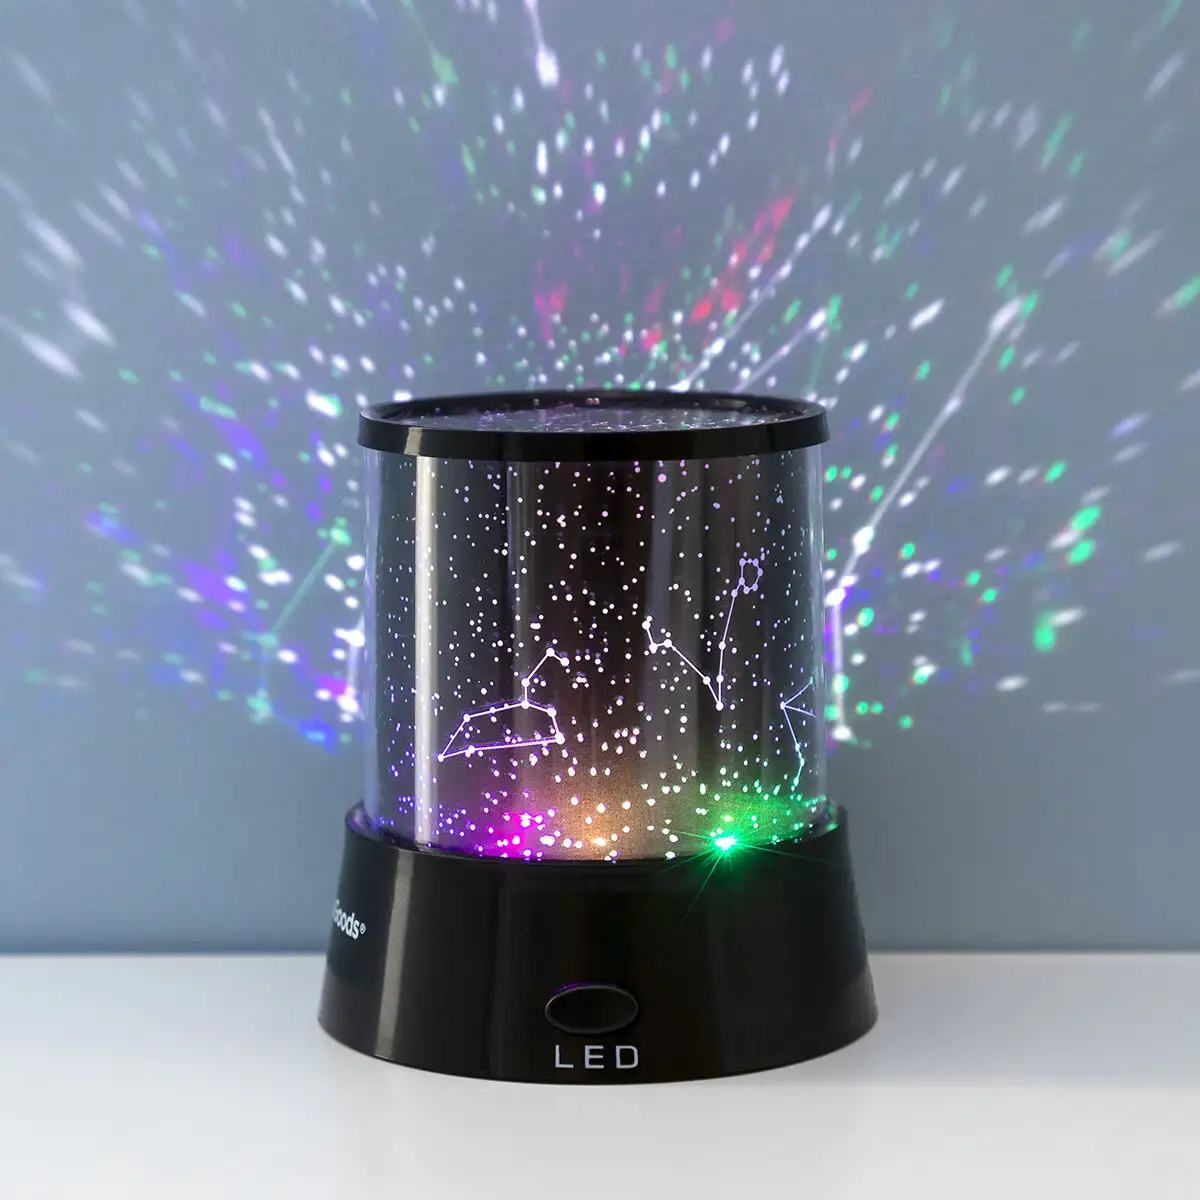 NEUFU LED Lumiere Multicolore Projecteur Ciel Nuit étoile Lampe Veilleuse  Décorative